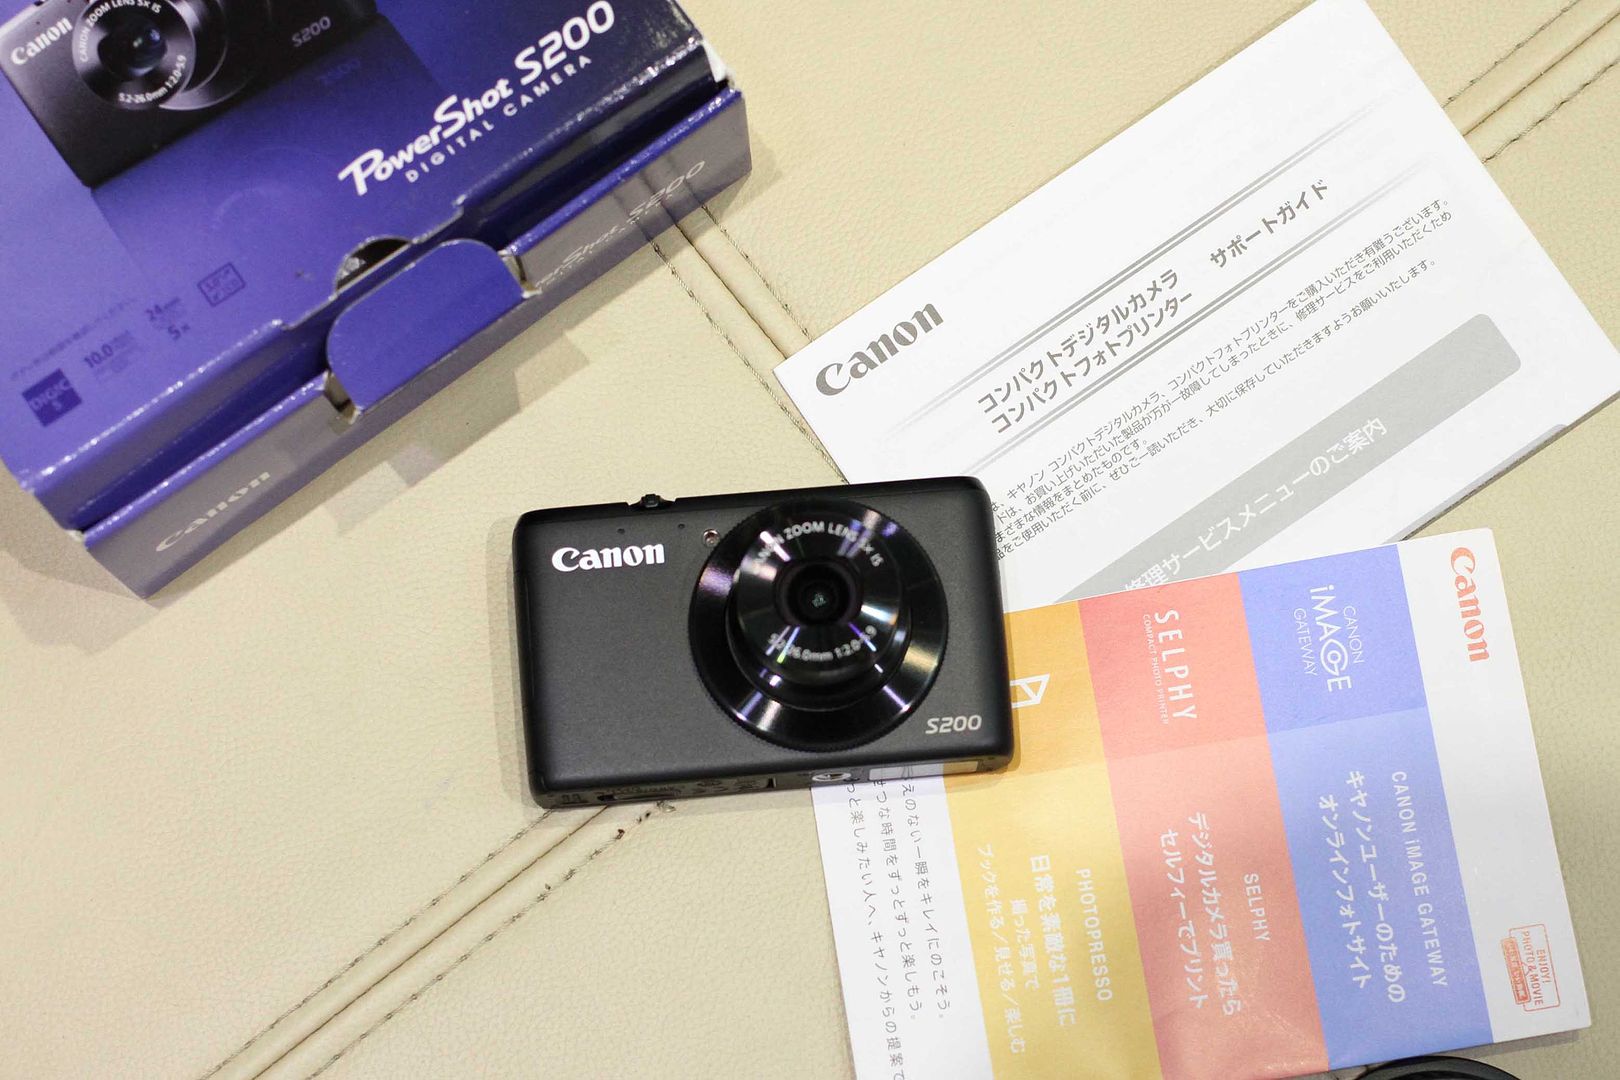 Bán máy ảnh compaq Canon PowerShot S200 full box hàng Japan.